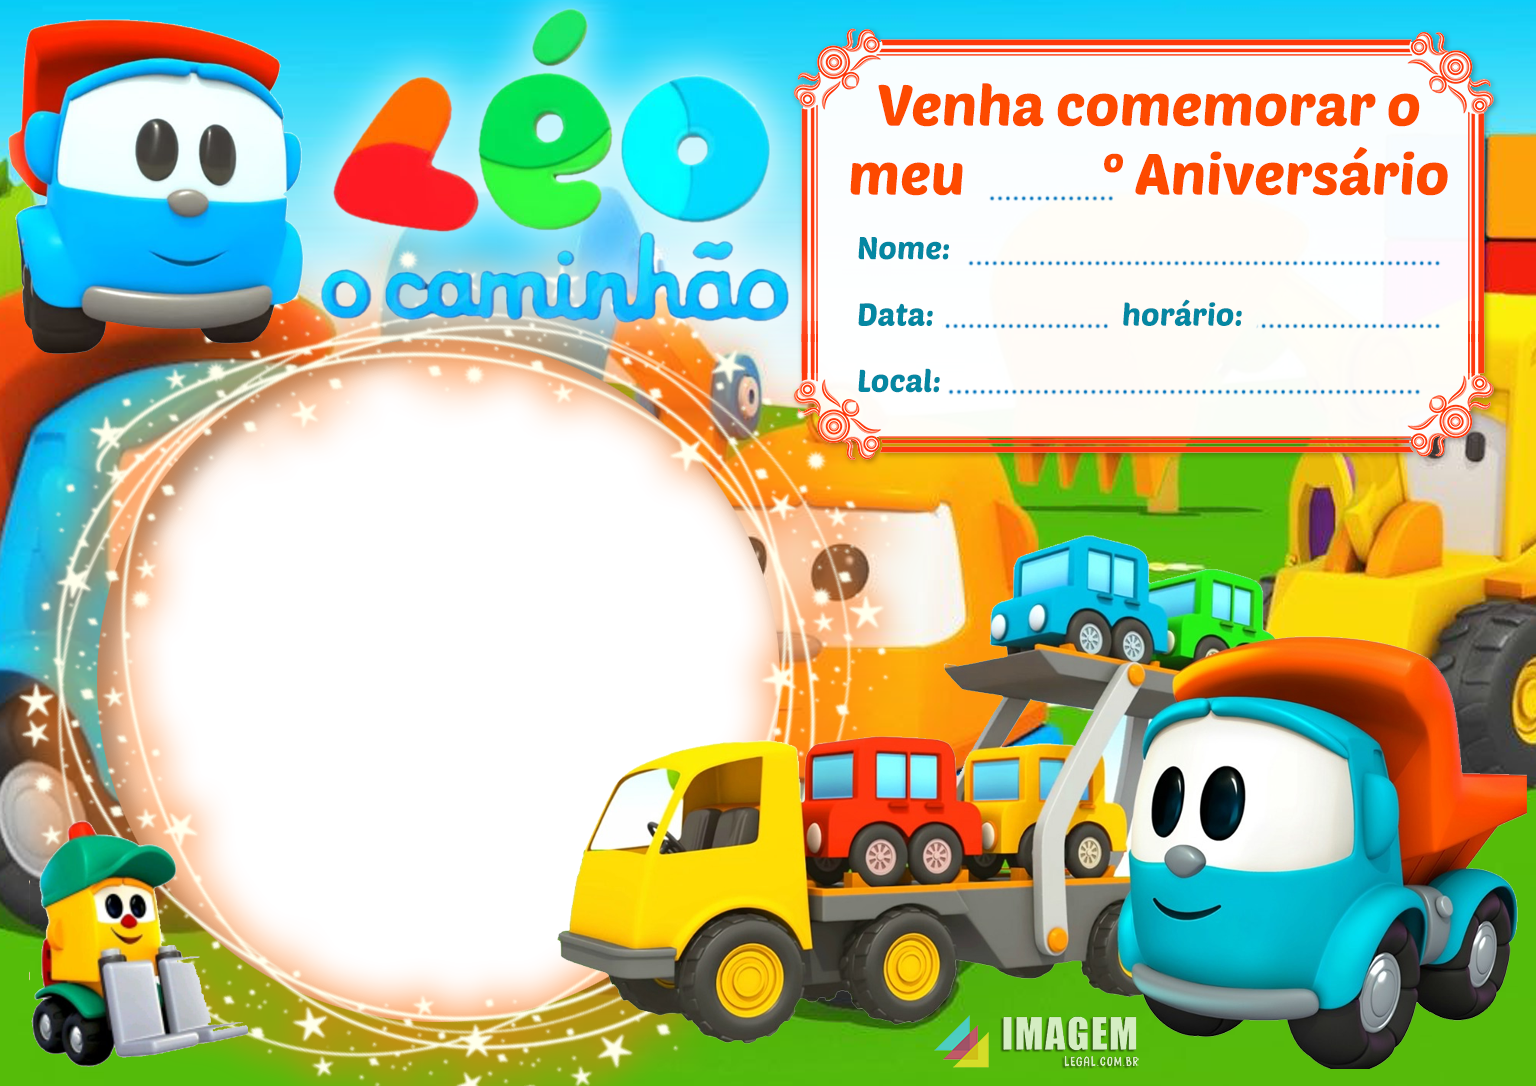 Convite Animado tema Léo o caminhão 💌📲 #convite #conviteinfantil #co